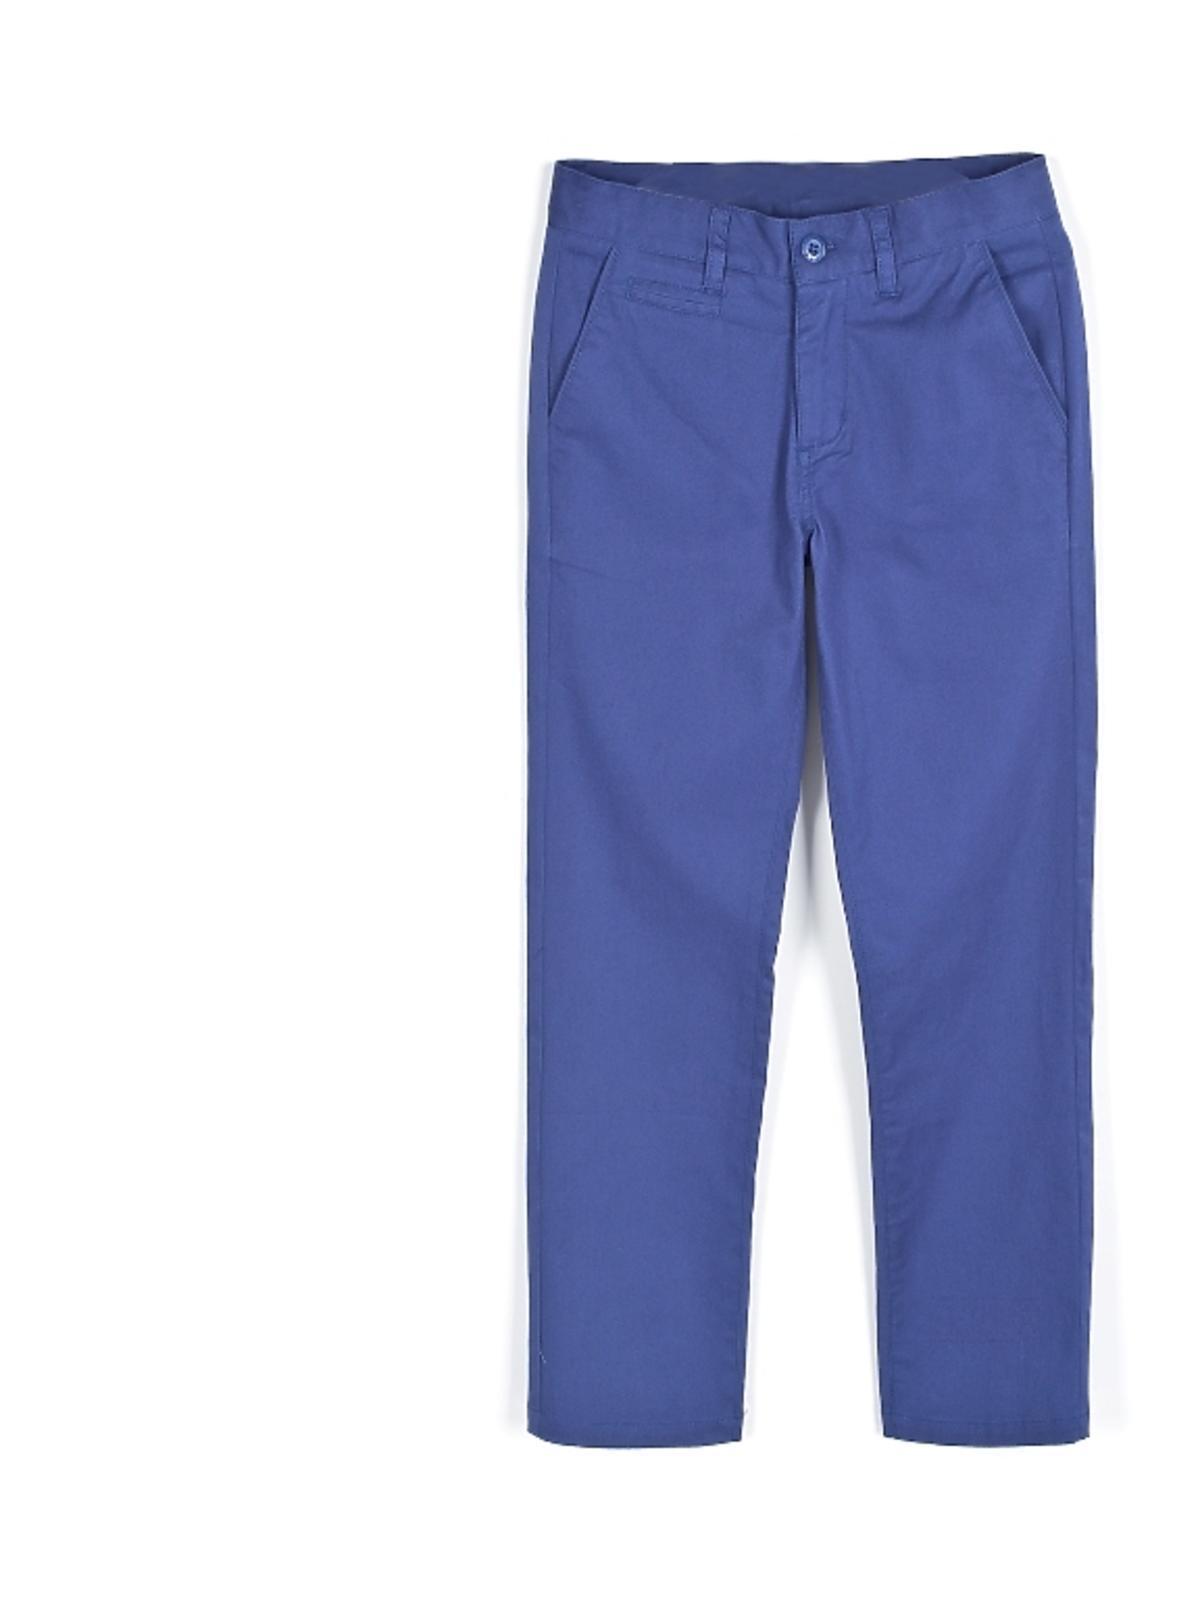 niebieskie-garniturowe-spodnie-coccodrillo.jpg